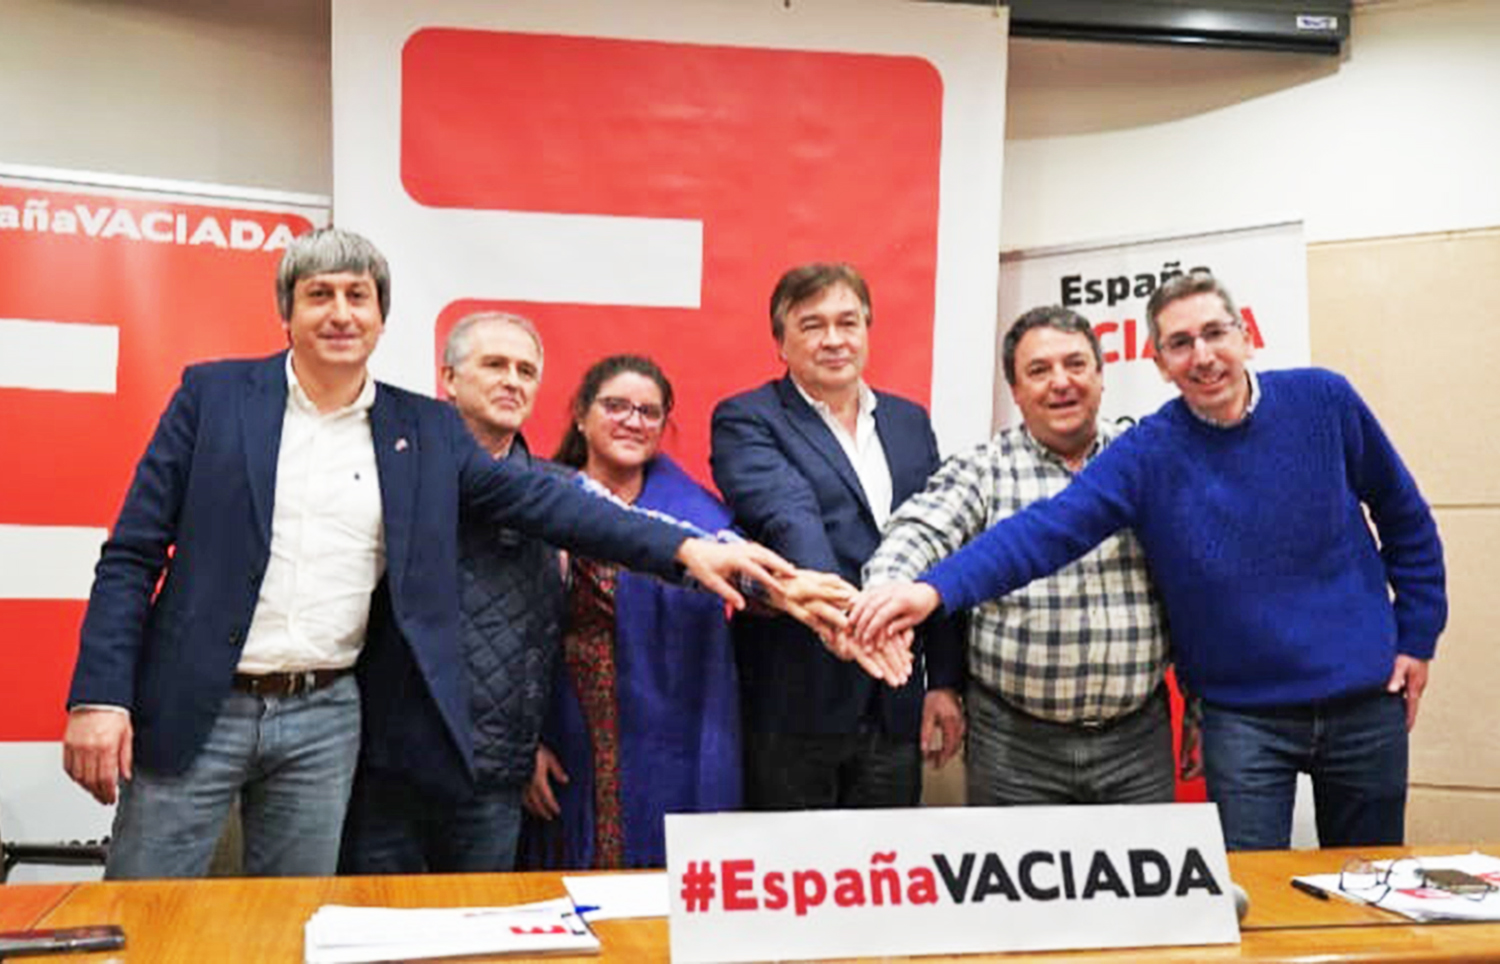 La ‘España Vaciada’ se prepara para los próximos procesos electorales y constituye una plataforma nacional de partidos